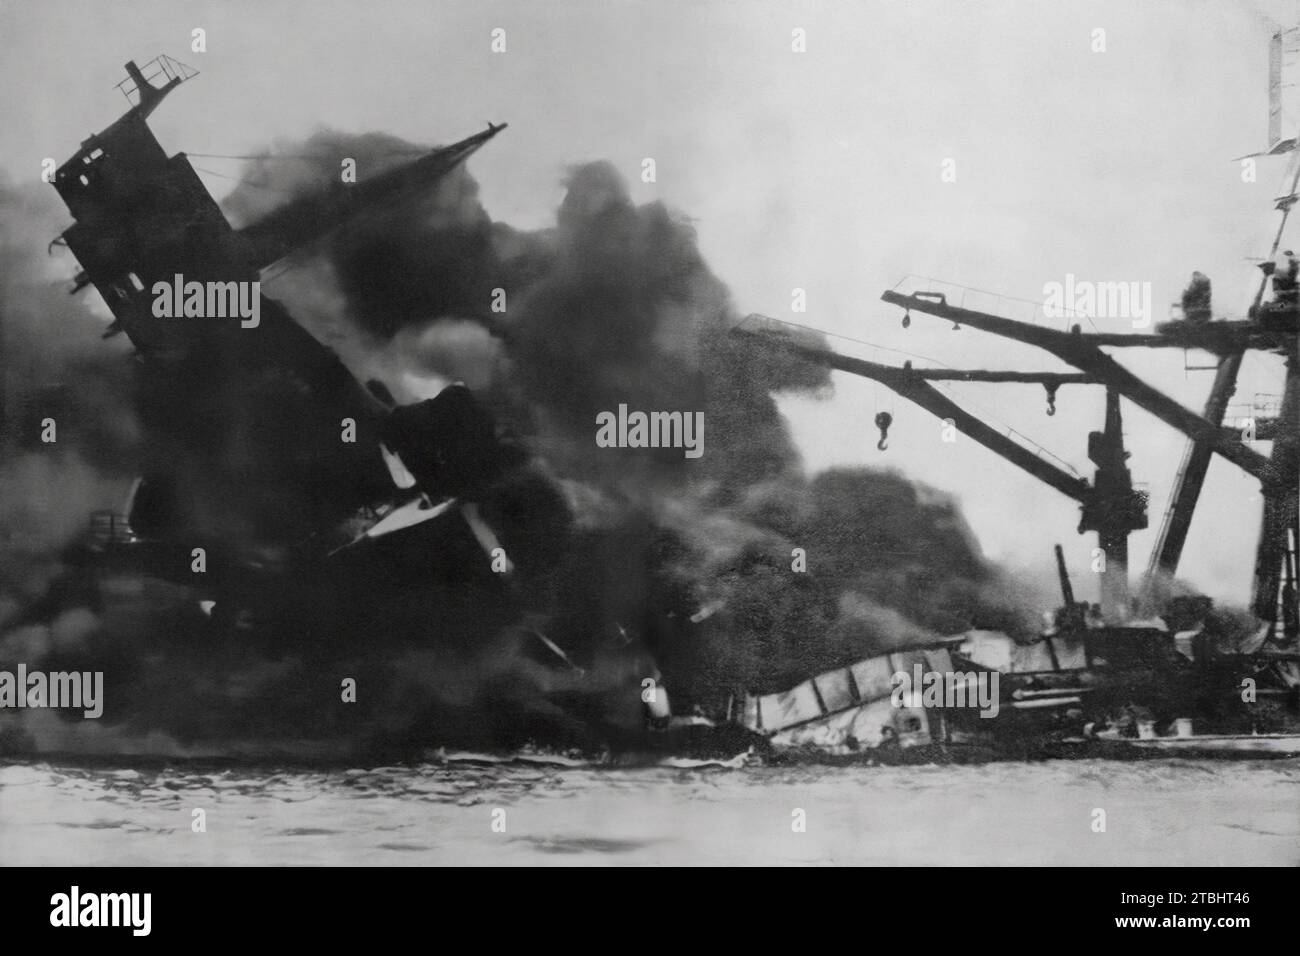 La corazzata statunitense 'Arizona' si è accesa prima di affondare a seguito dell'attacco giapponese a Pearl Harbour, Hawaii, il 7 dicembre 1941, durante la seconda guerra mondiale. Foto Stock